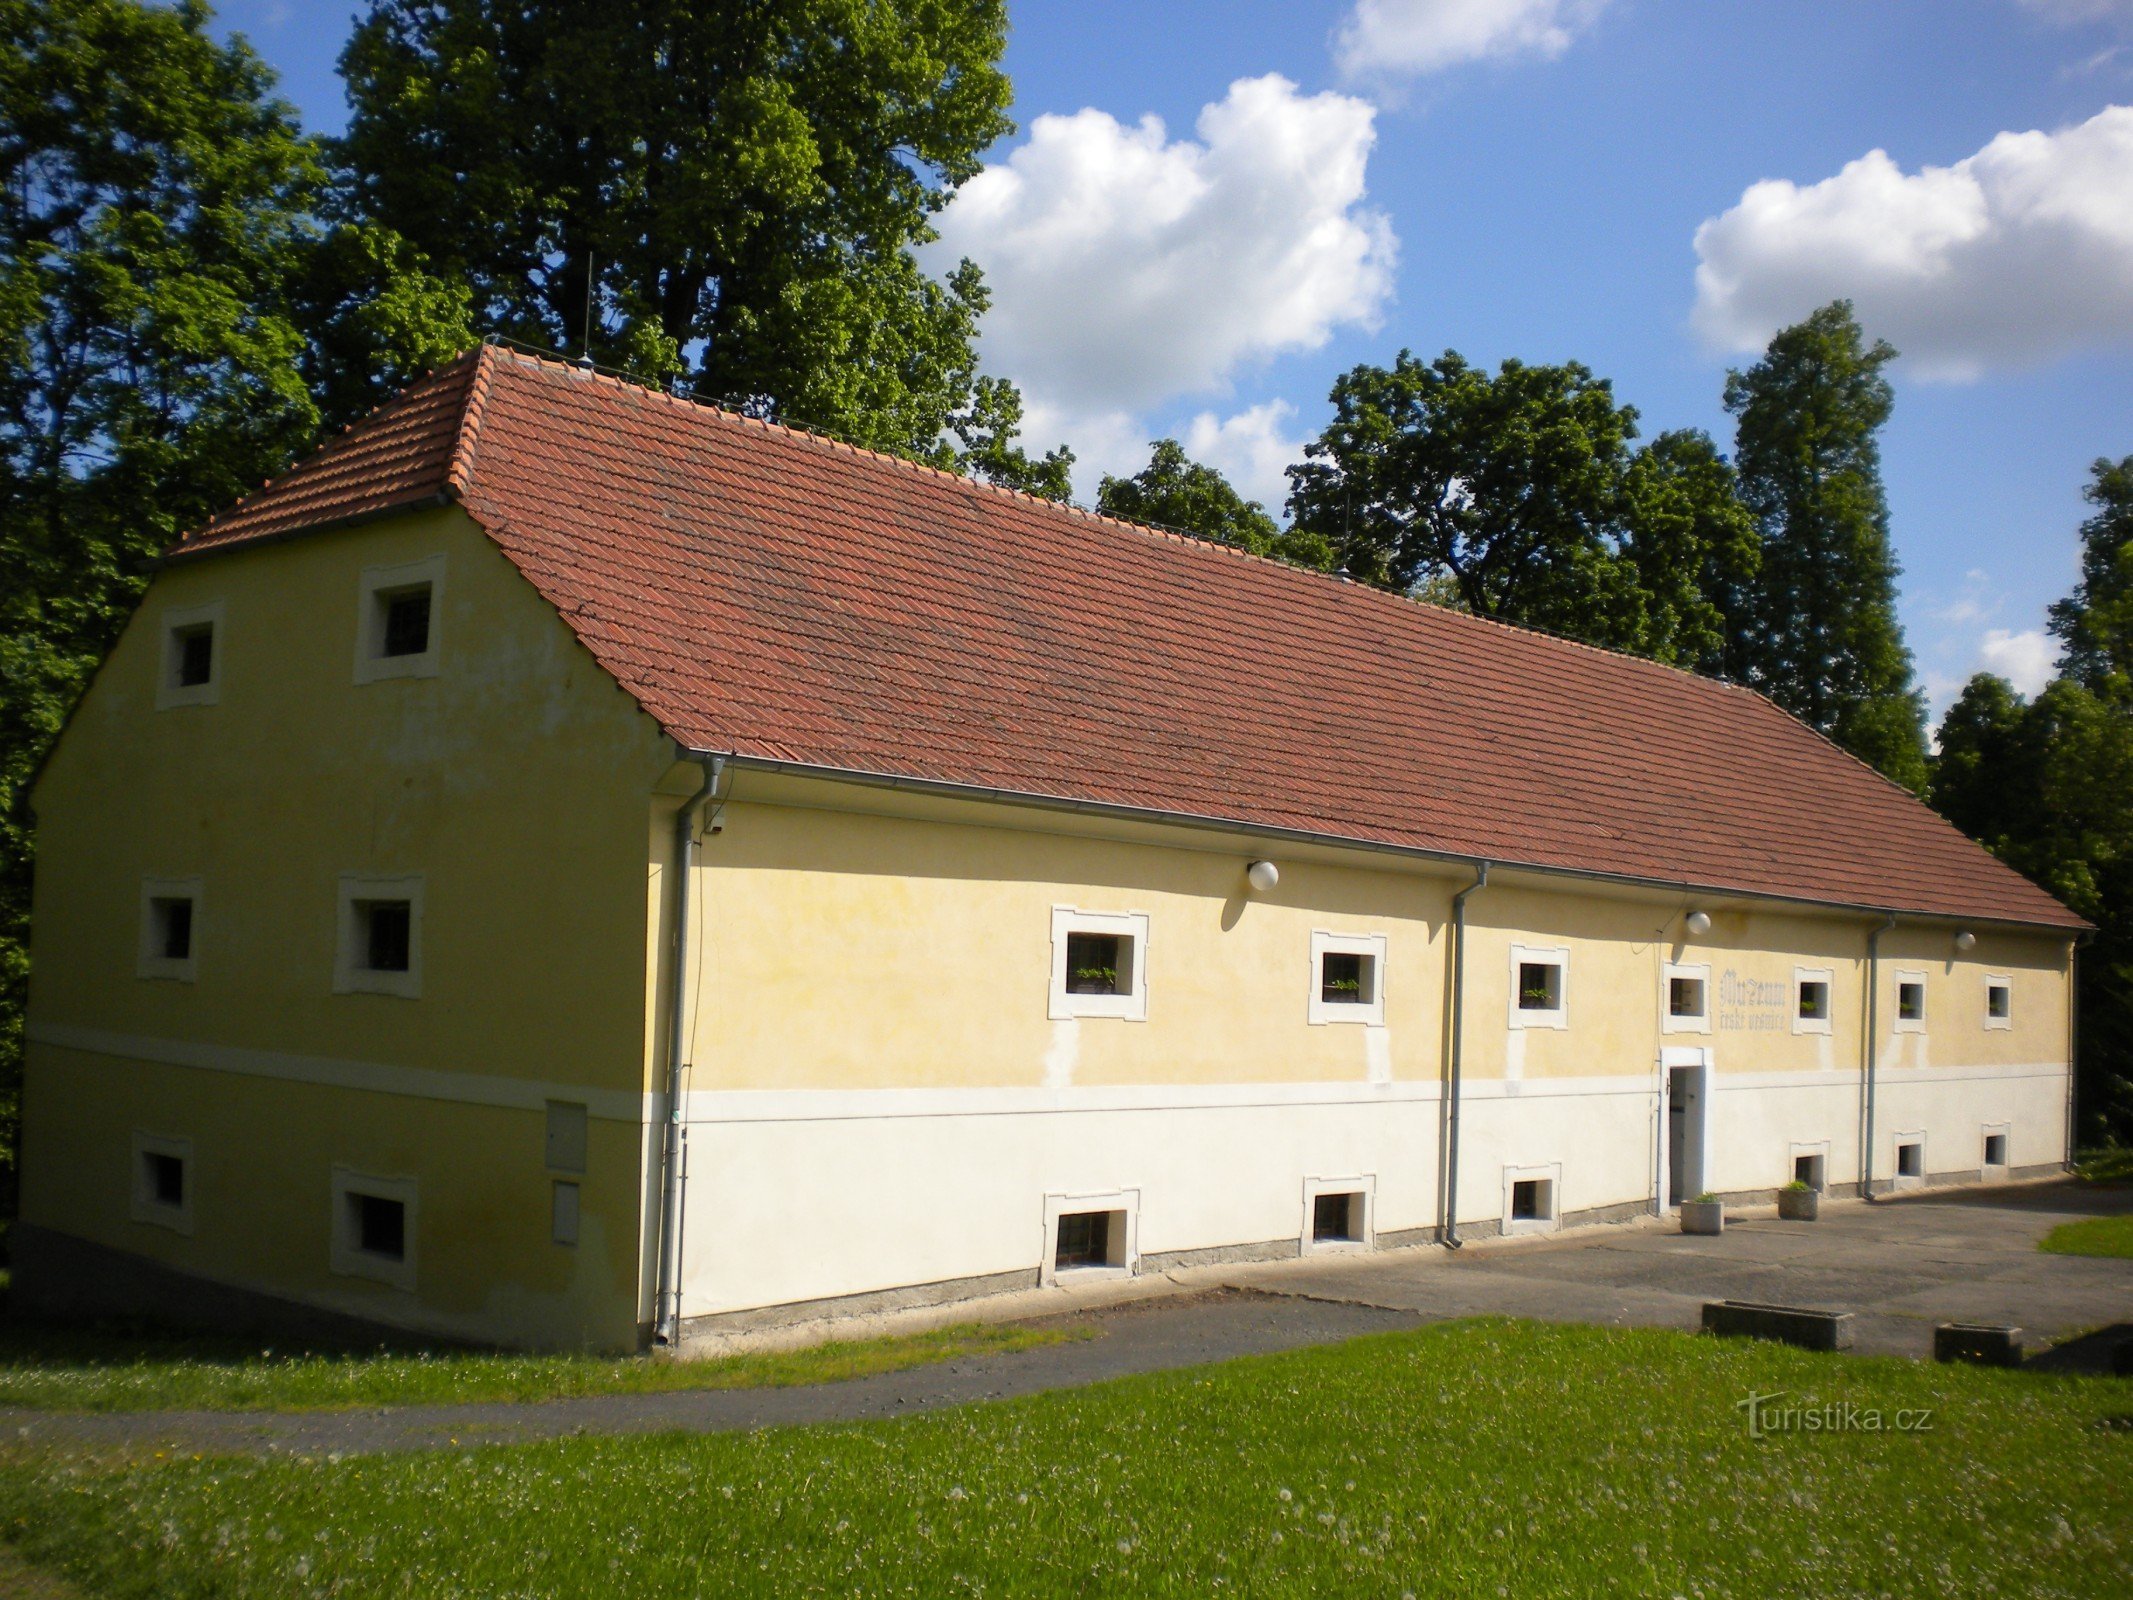 Museum des böhmischen Dorfes